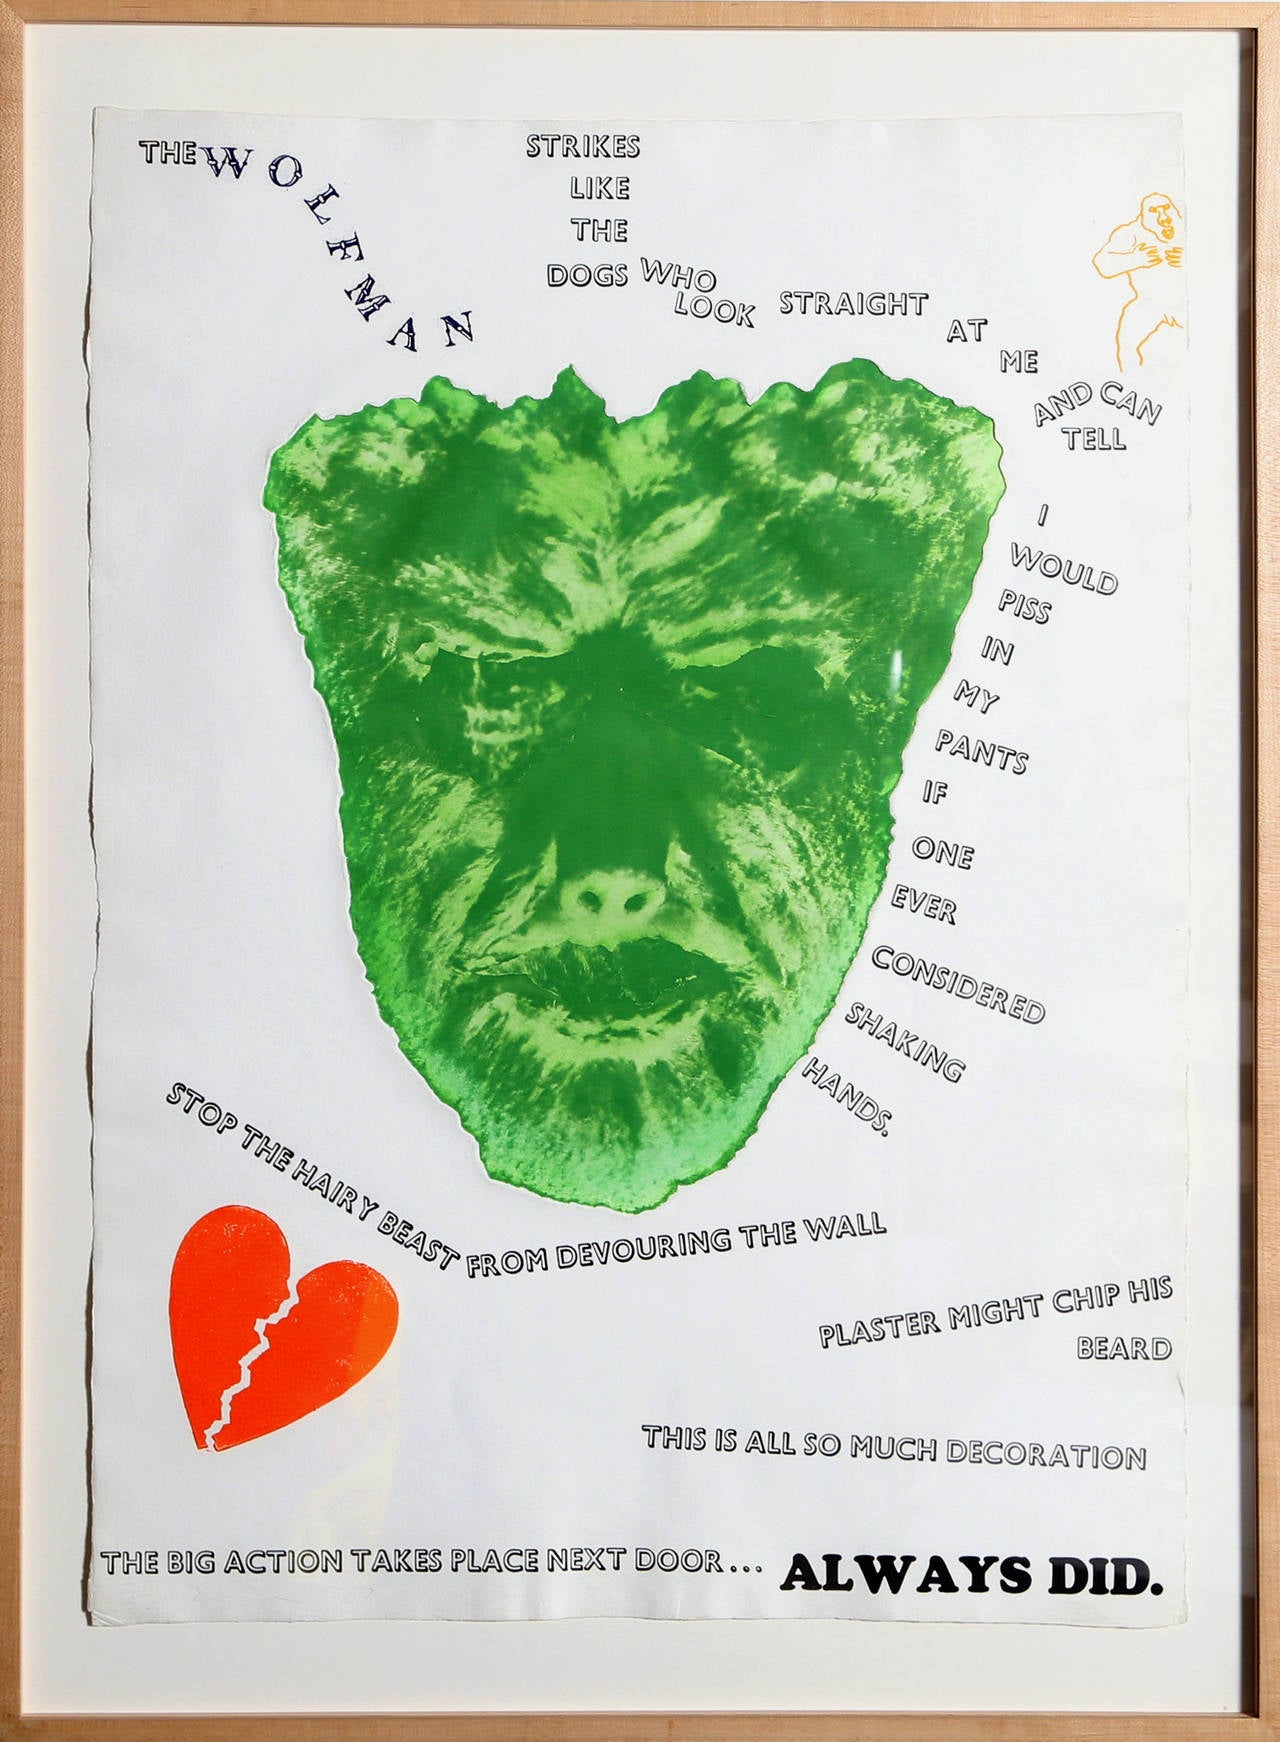 Künstler: Jim Dine, Amerikaner (1935 - )
Titel: Wolfsmensch (Mauer) 
Jahr: 1967
Medium: Aquatinta-Radierung, mit Bleistift signiert und nummeriert
Auflage: 25/120
Größe: 31 in. x 22 in. (78,74 cm x 55,88 cm)
Rahmen: 35.5 x 26 Zoll